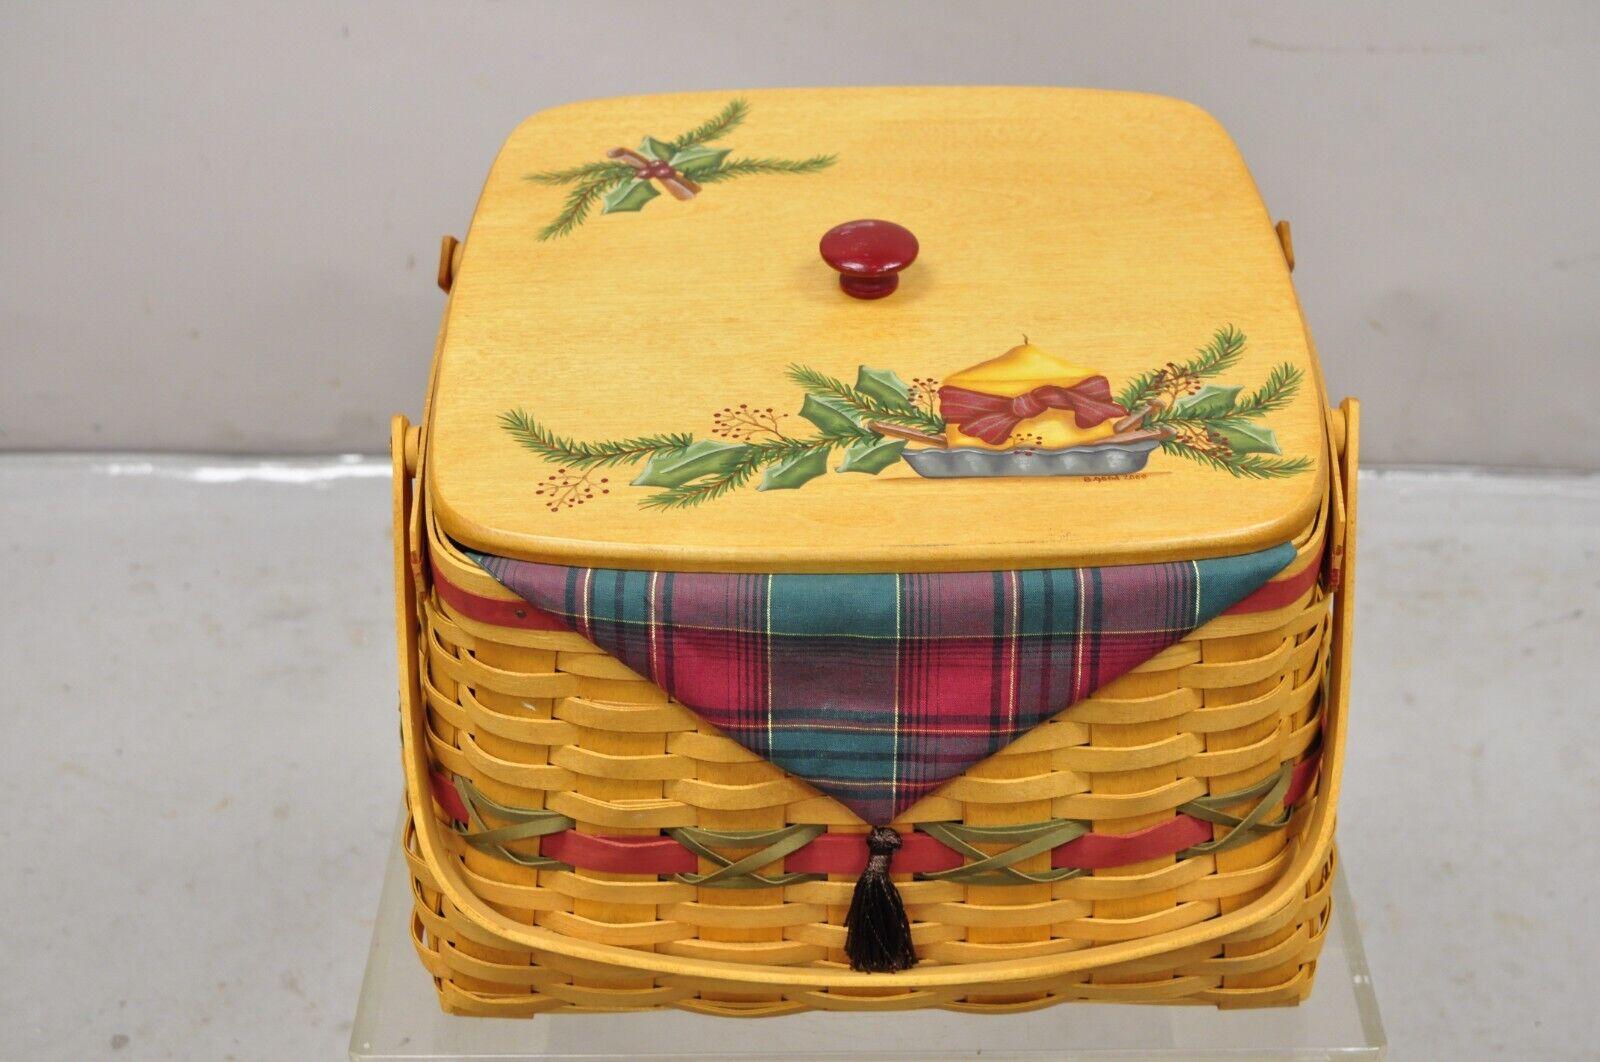 Vintage Byaberger 2000 Holiday Hostess 12 Days of Christmas Basket 17833 with Lid & Liners. Caractéristiques de l'article Comprend 3 sacs en plastique. Vers 2000. Dimensions : 10